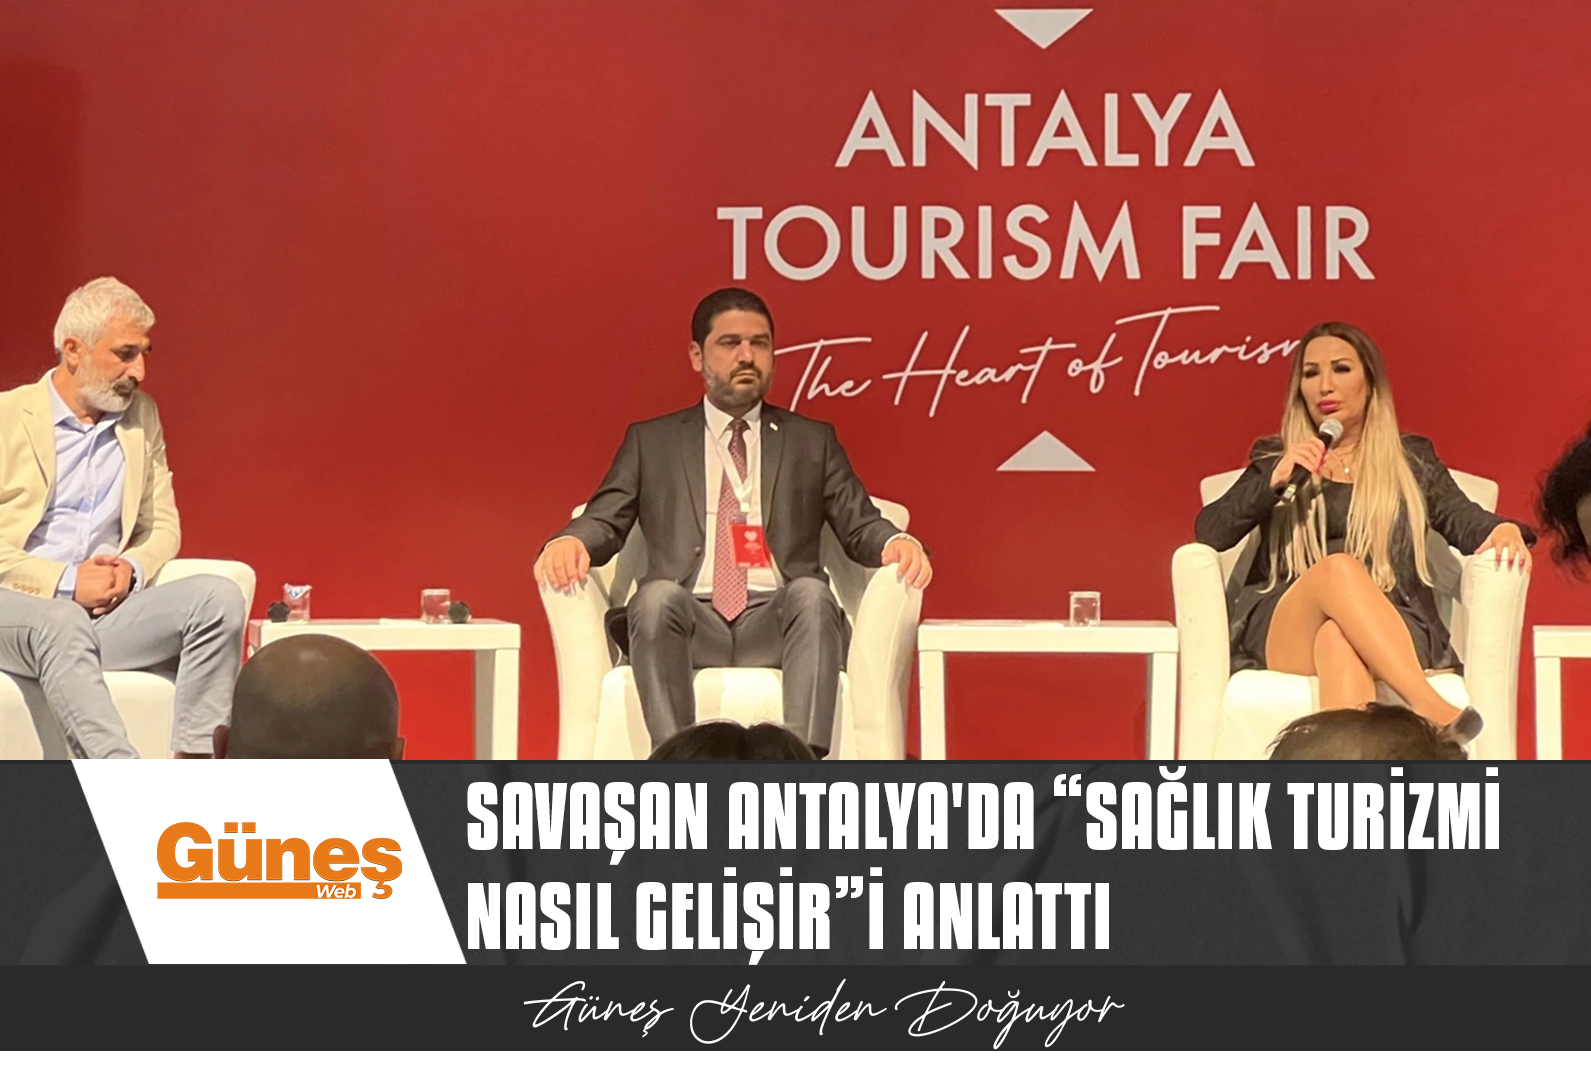 Savaşan Antalya’da “Sağlık Turizmi Nasıl Gelişir”i anlattı